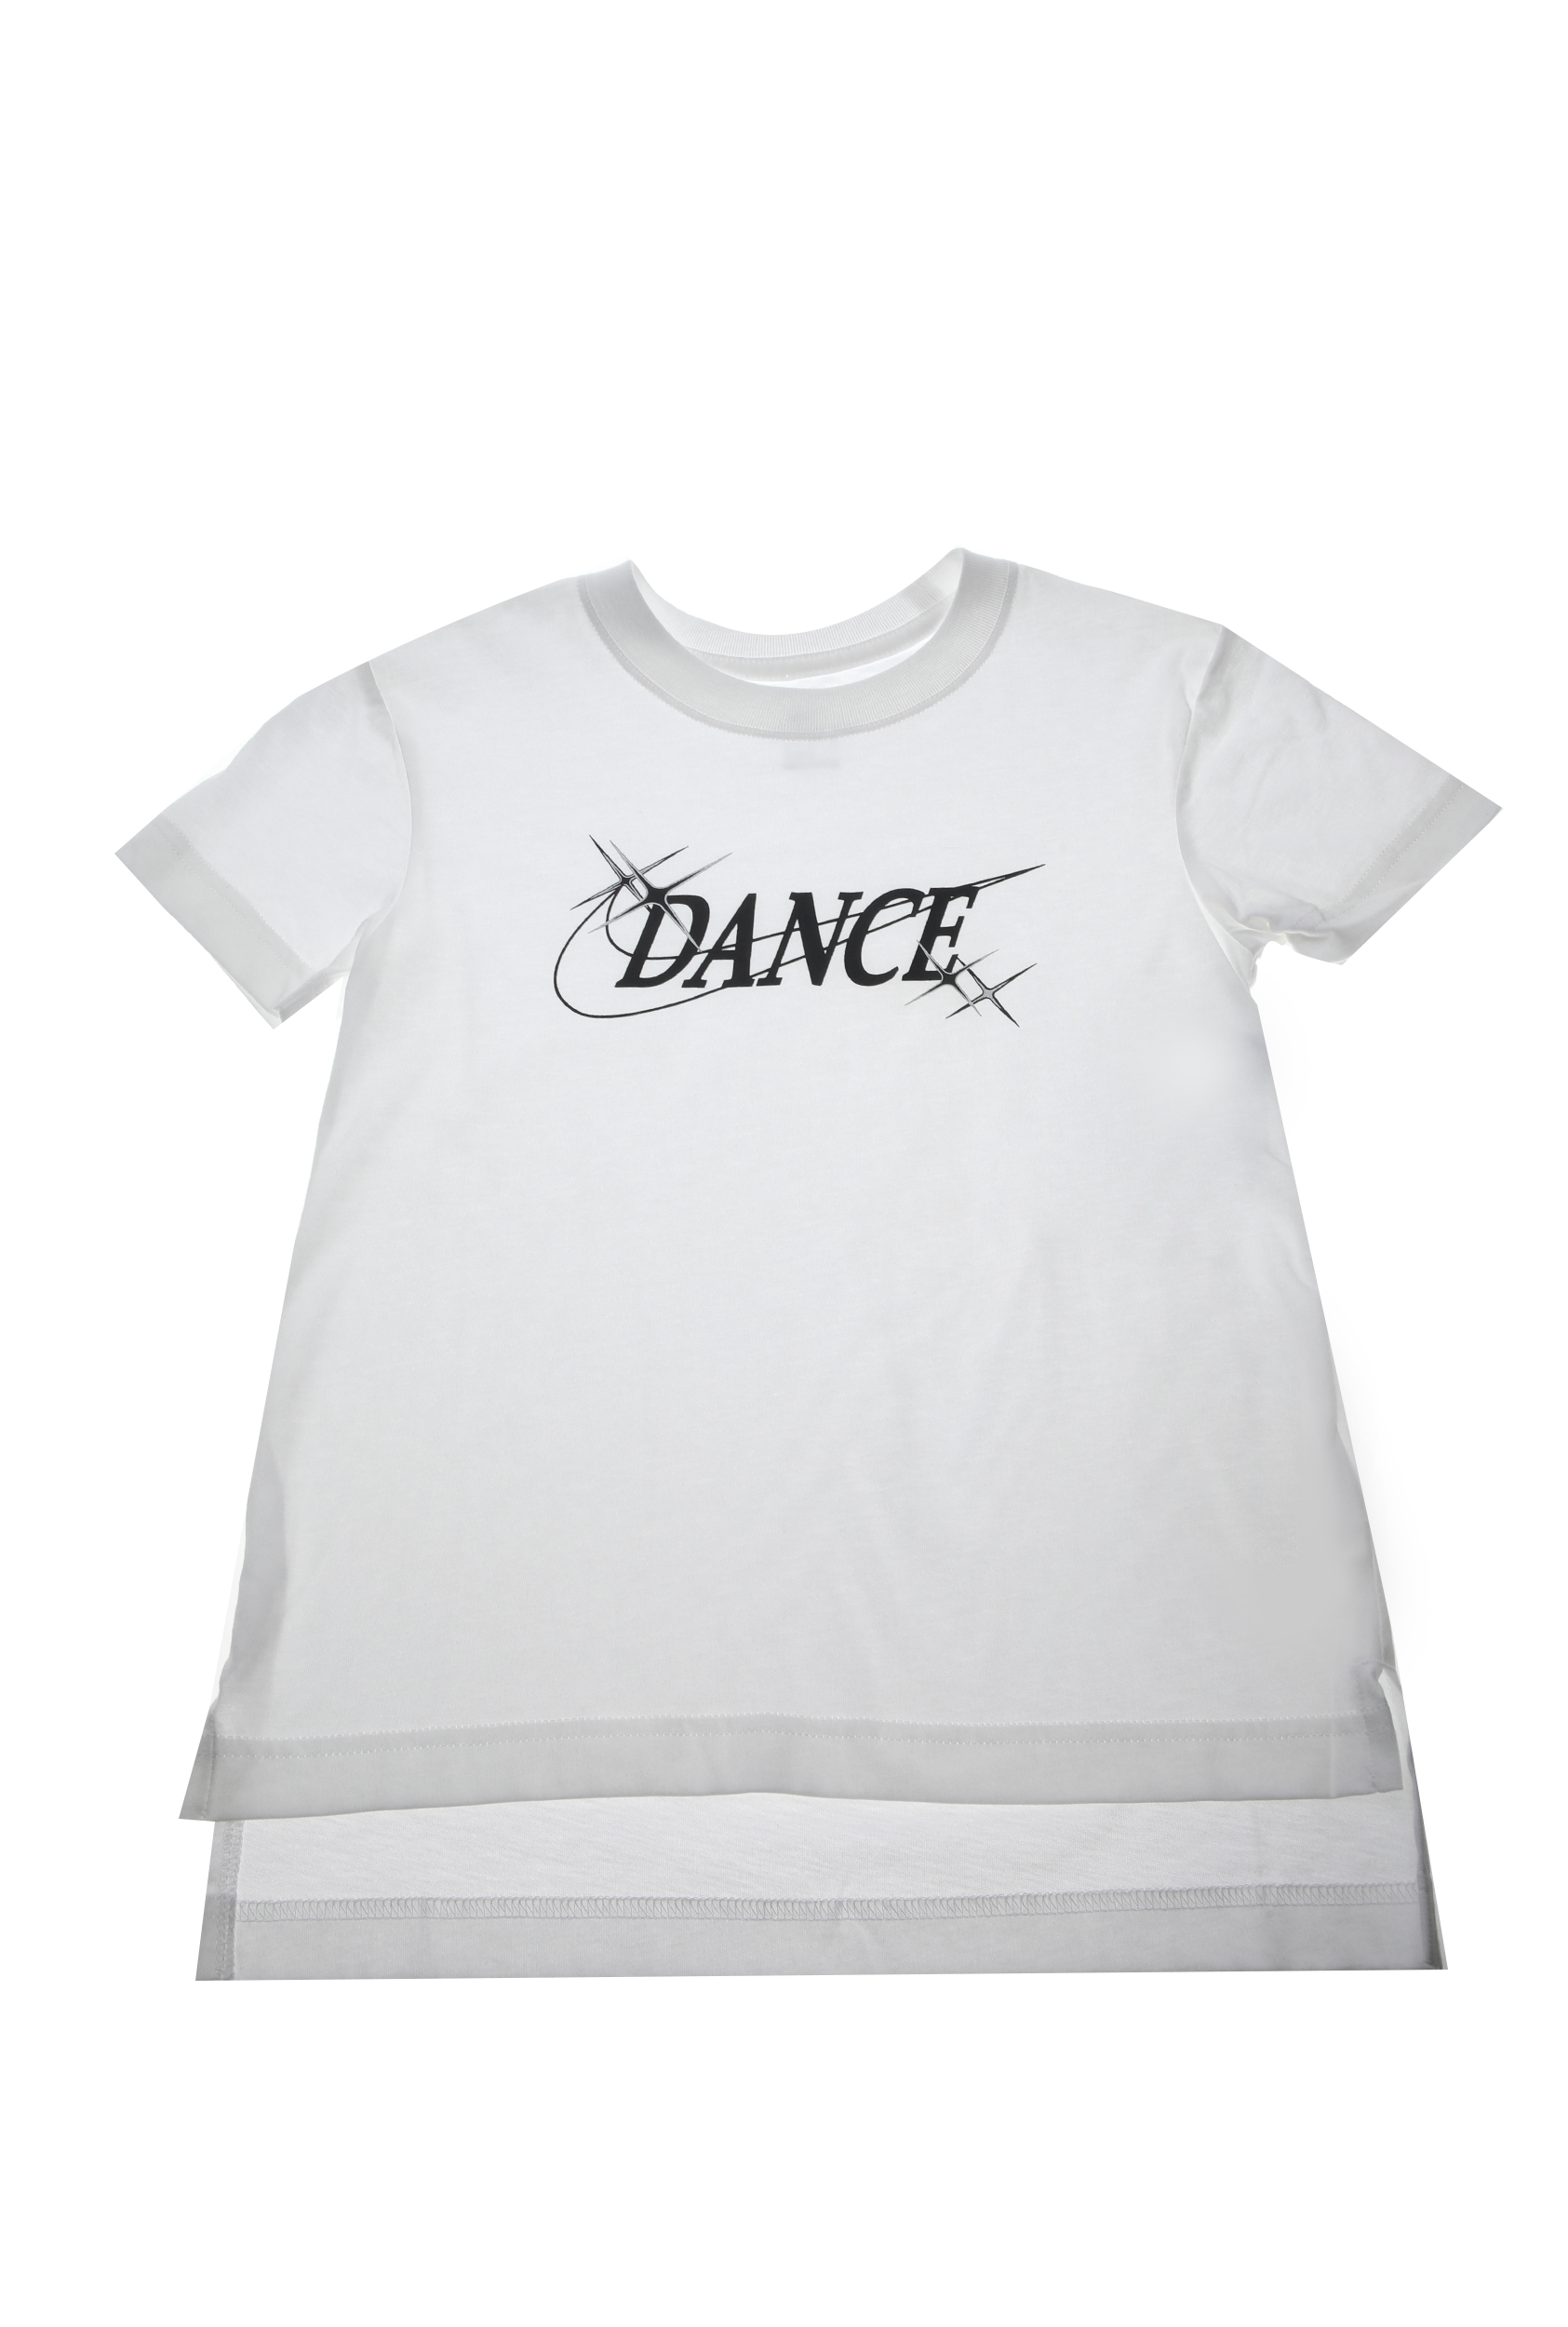 NIKE Παιδική κοντομάνικη μπλούζα NIKE ΤEE DANCE λευκή